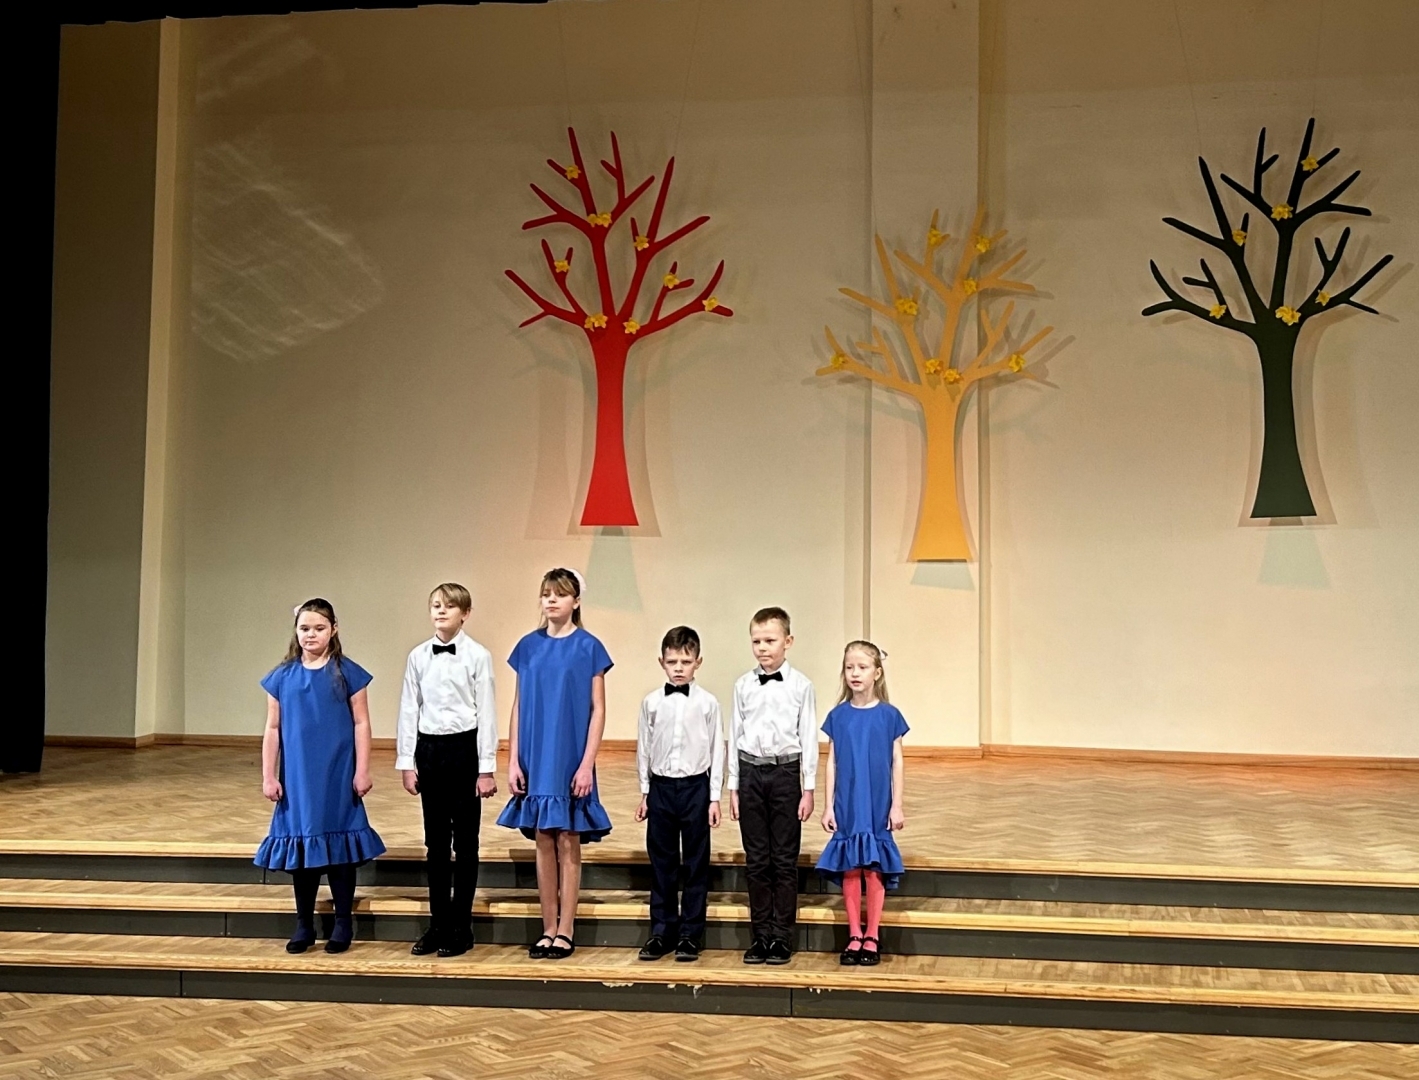 6 bērni - 3 meitenes zilās kleitās, 3 zeņi baltos kreklos un melnās biksēs dzied  uz skatuves, fonā dekorācijās krāsaini koki 02.2024.